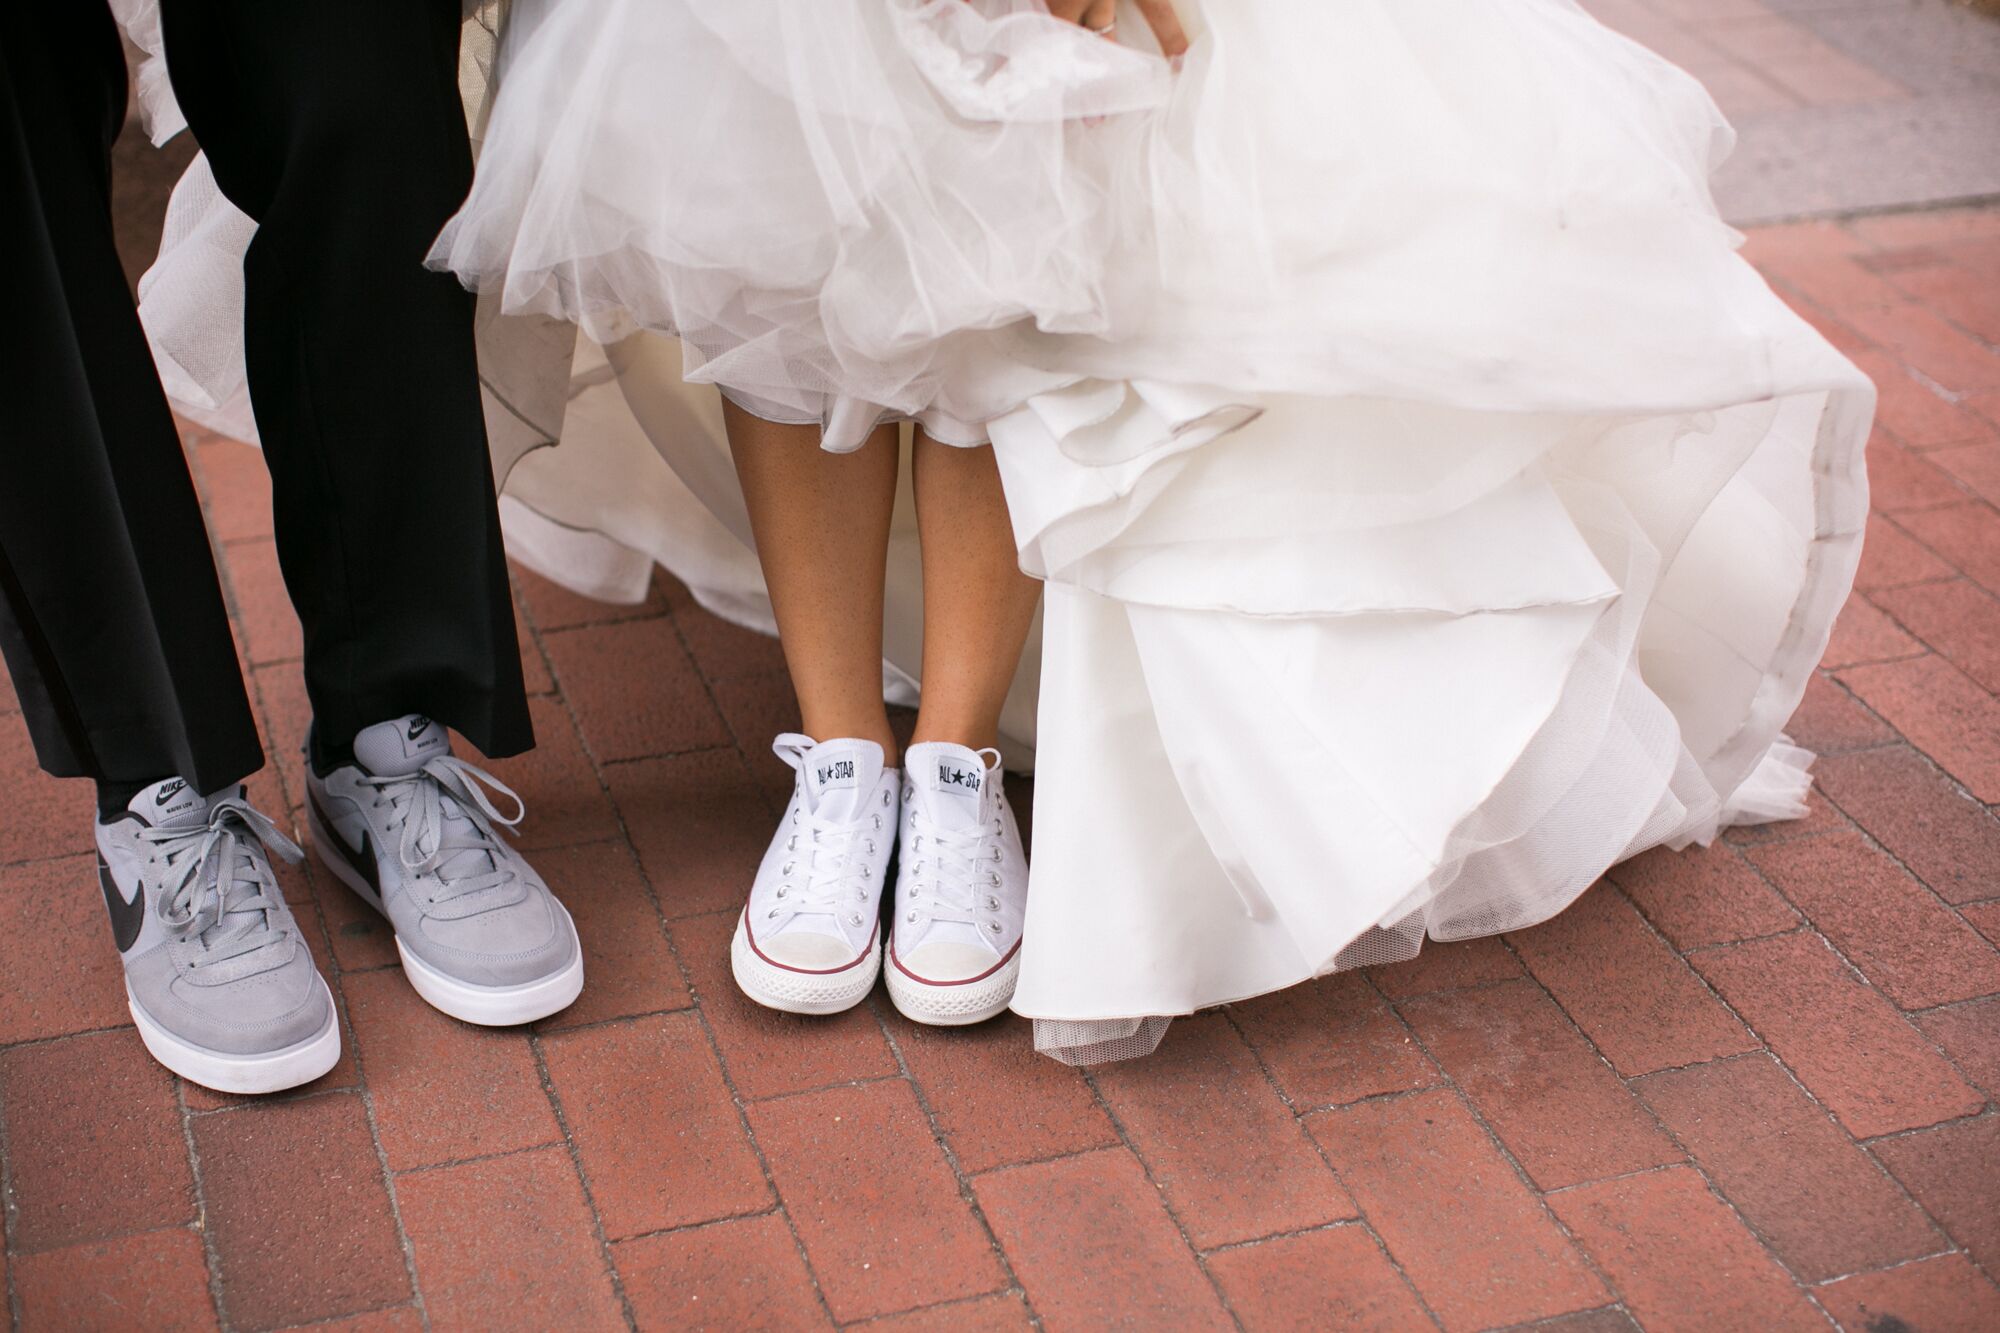 converse in wedding